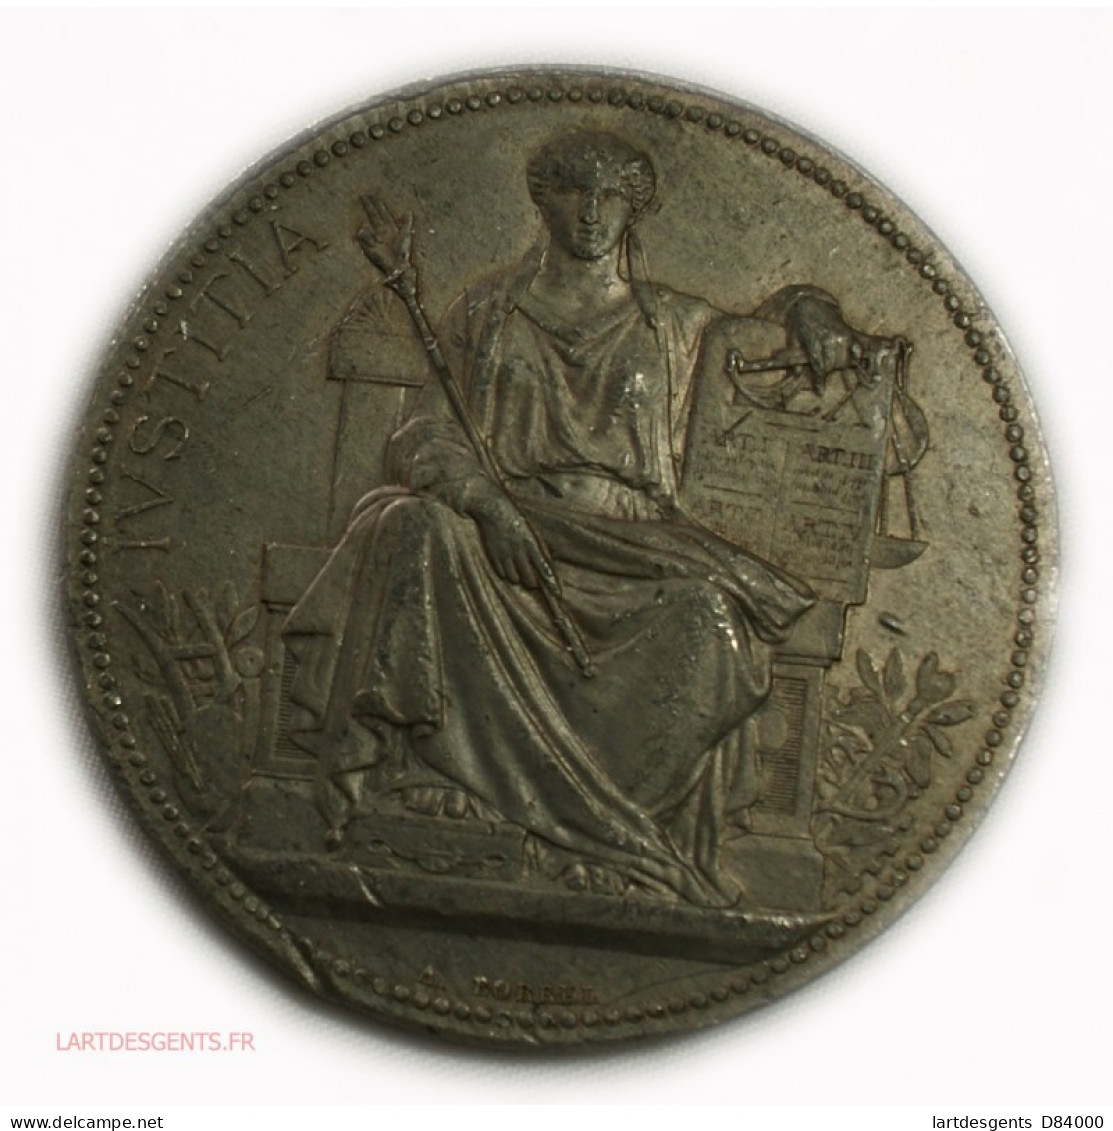 Rare Médaille Justice étain - Béziers 1892, Lartdesgents - Royal / Of Nobility